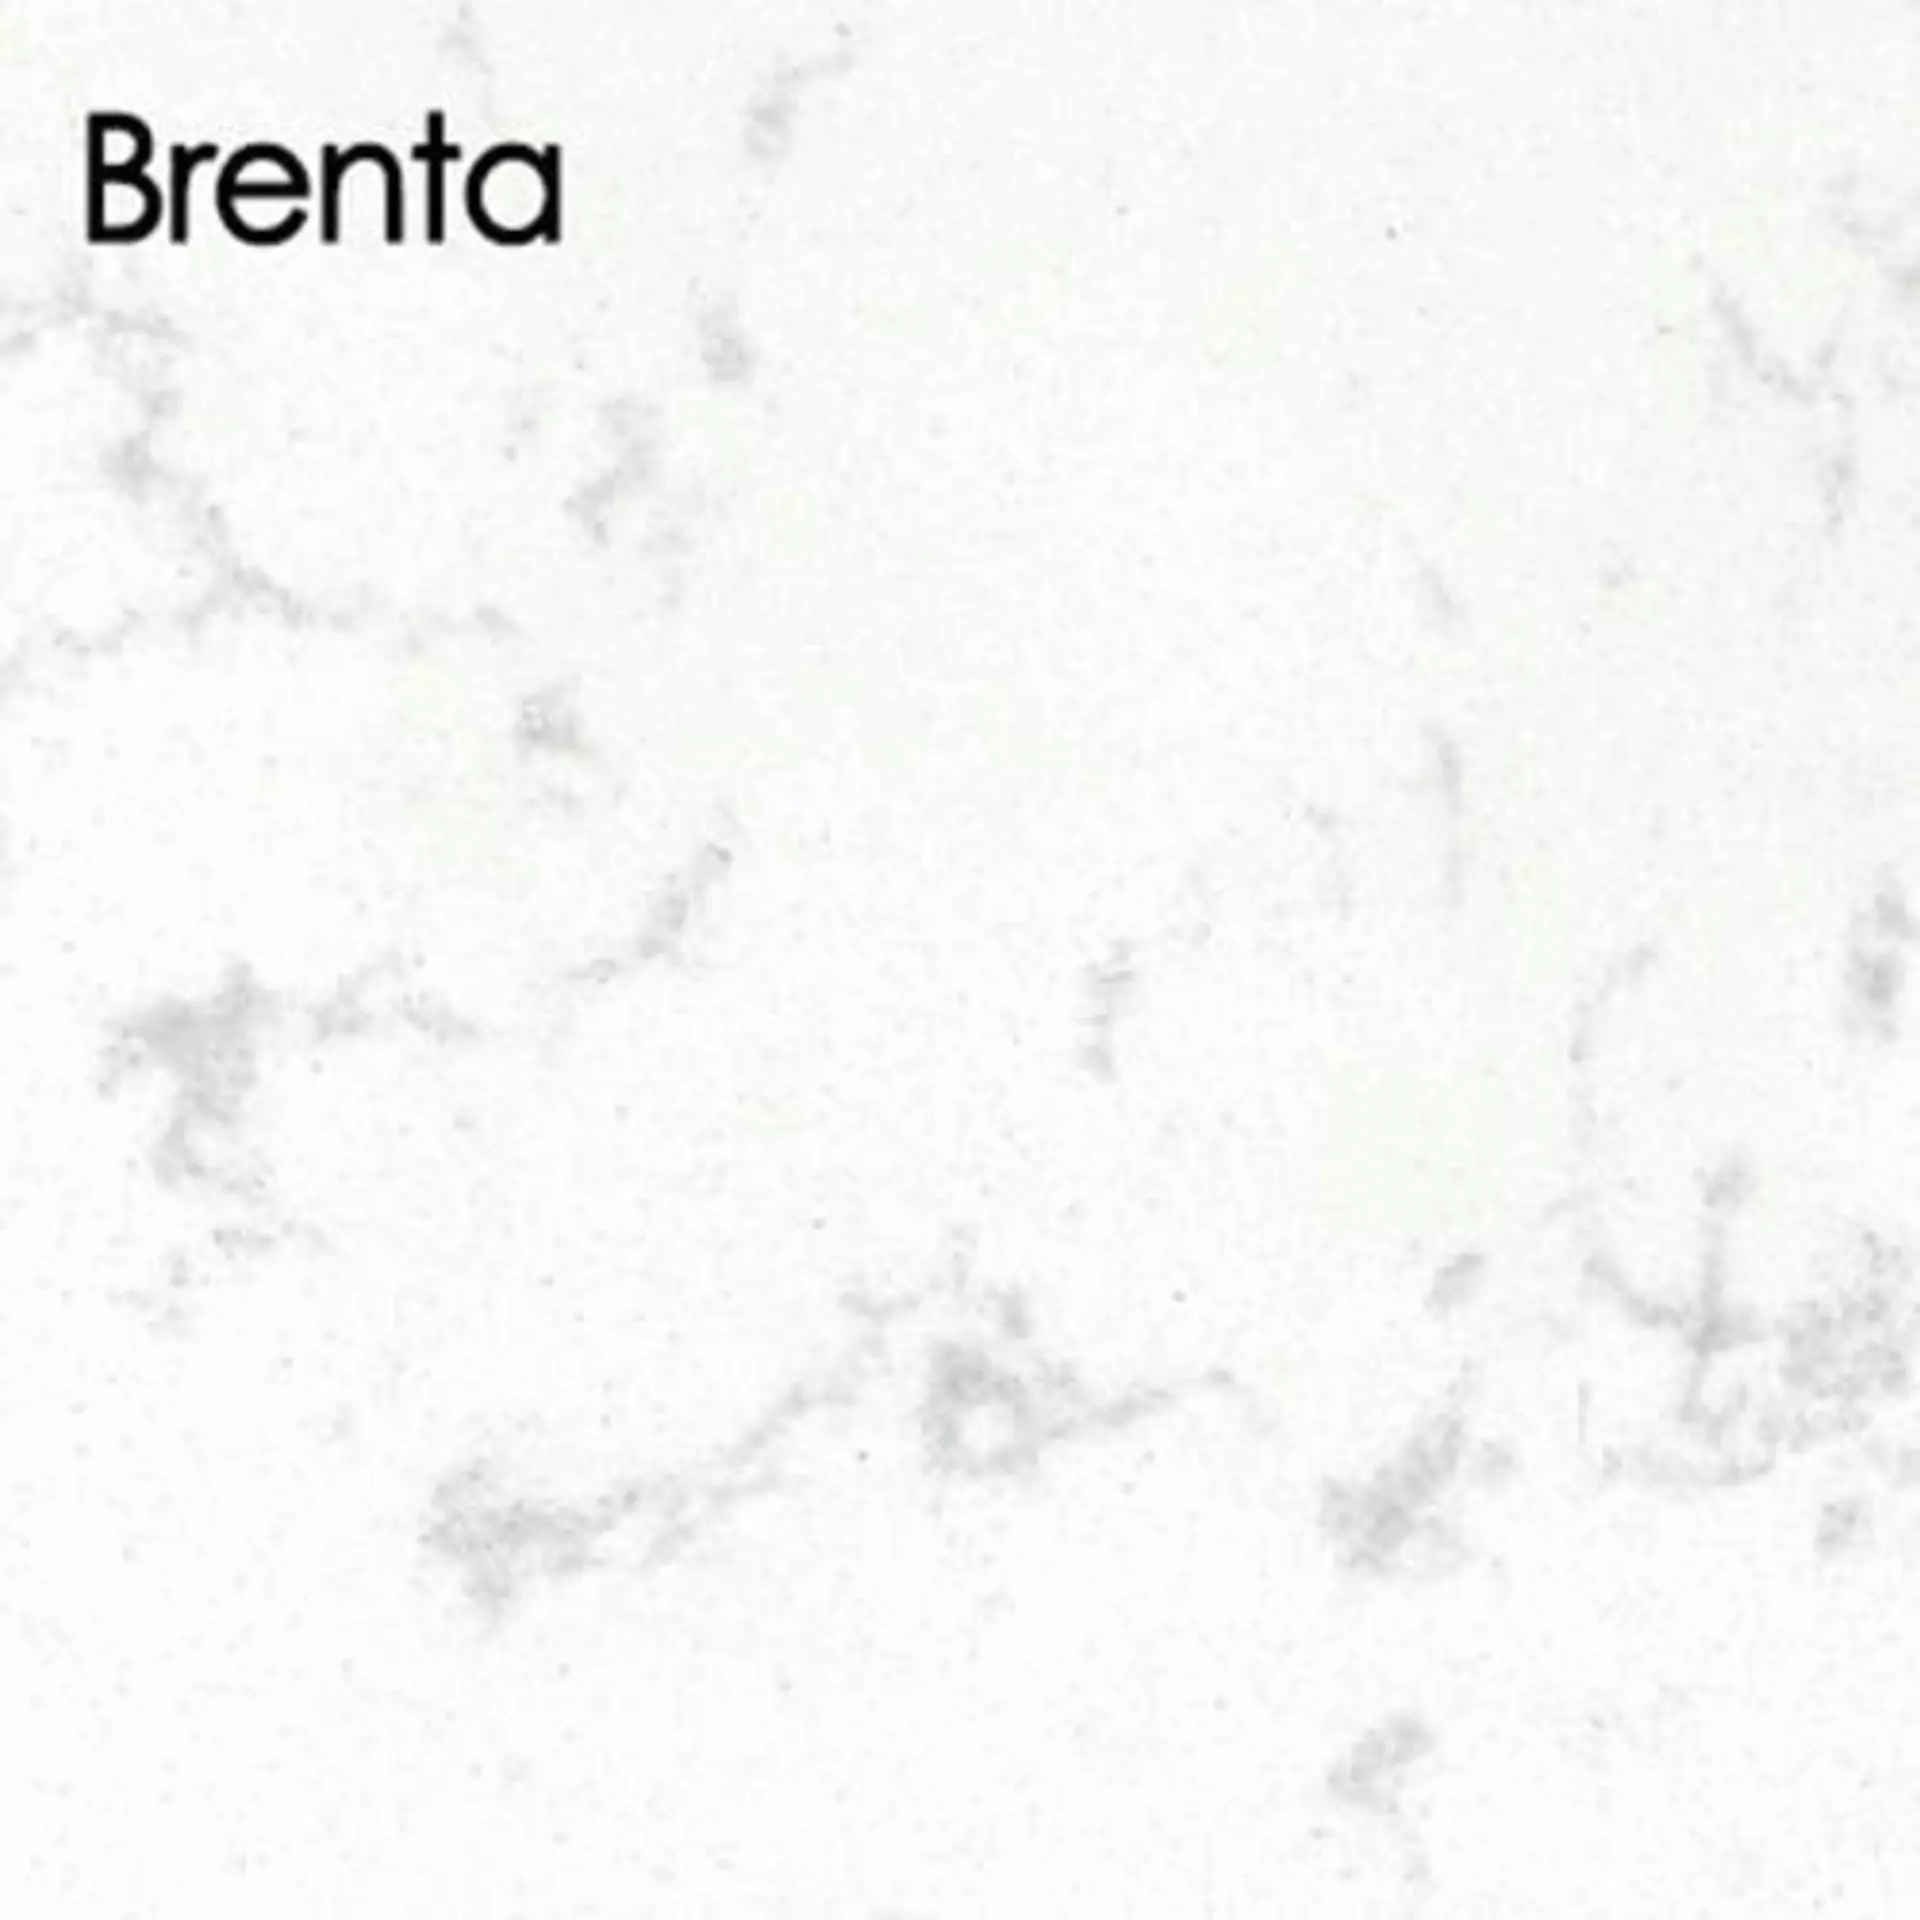 Arbeitsplatte aus Kunststein in der Ausführung Brenta. Die weiße arbeitsplatte ist hellgrau marmoriert.